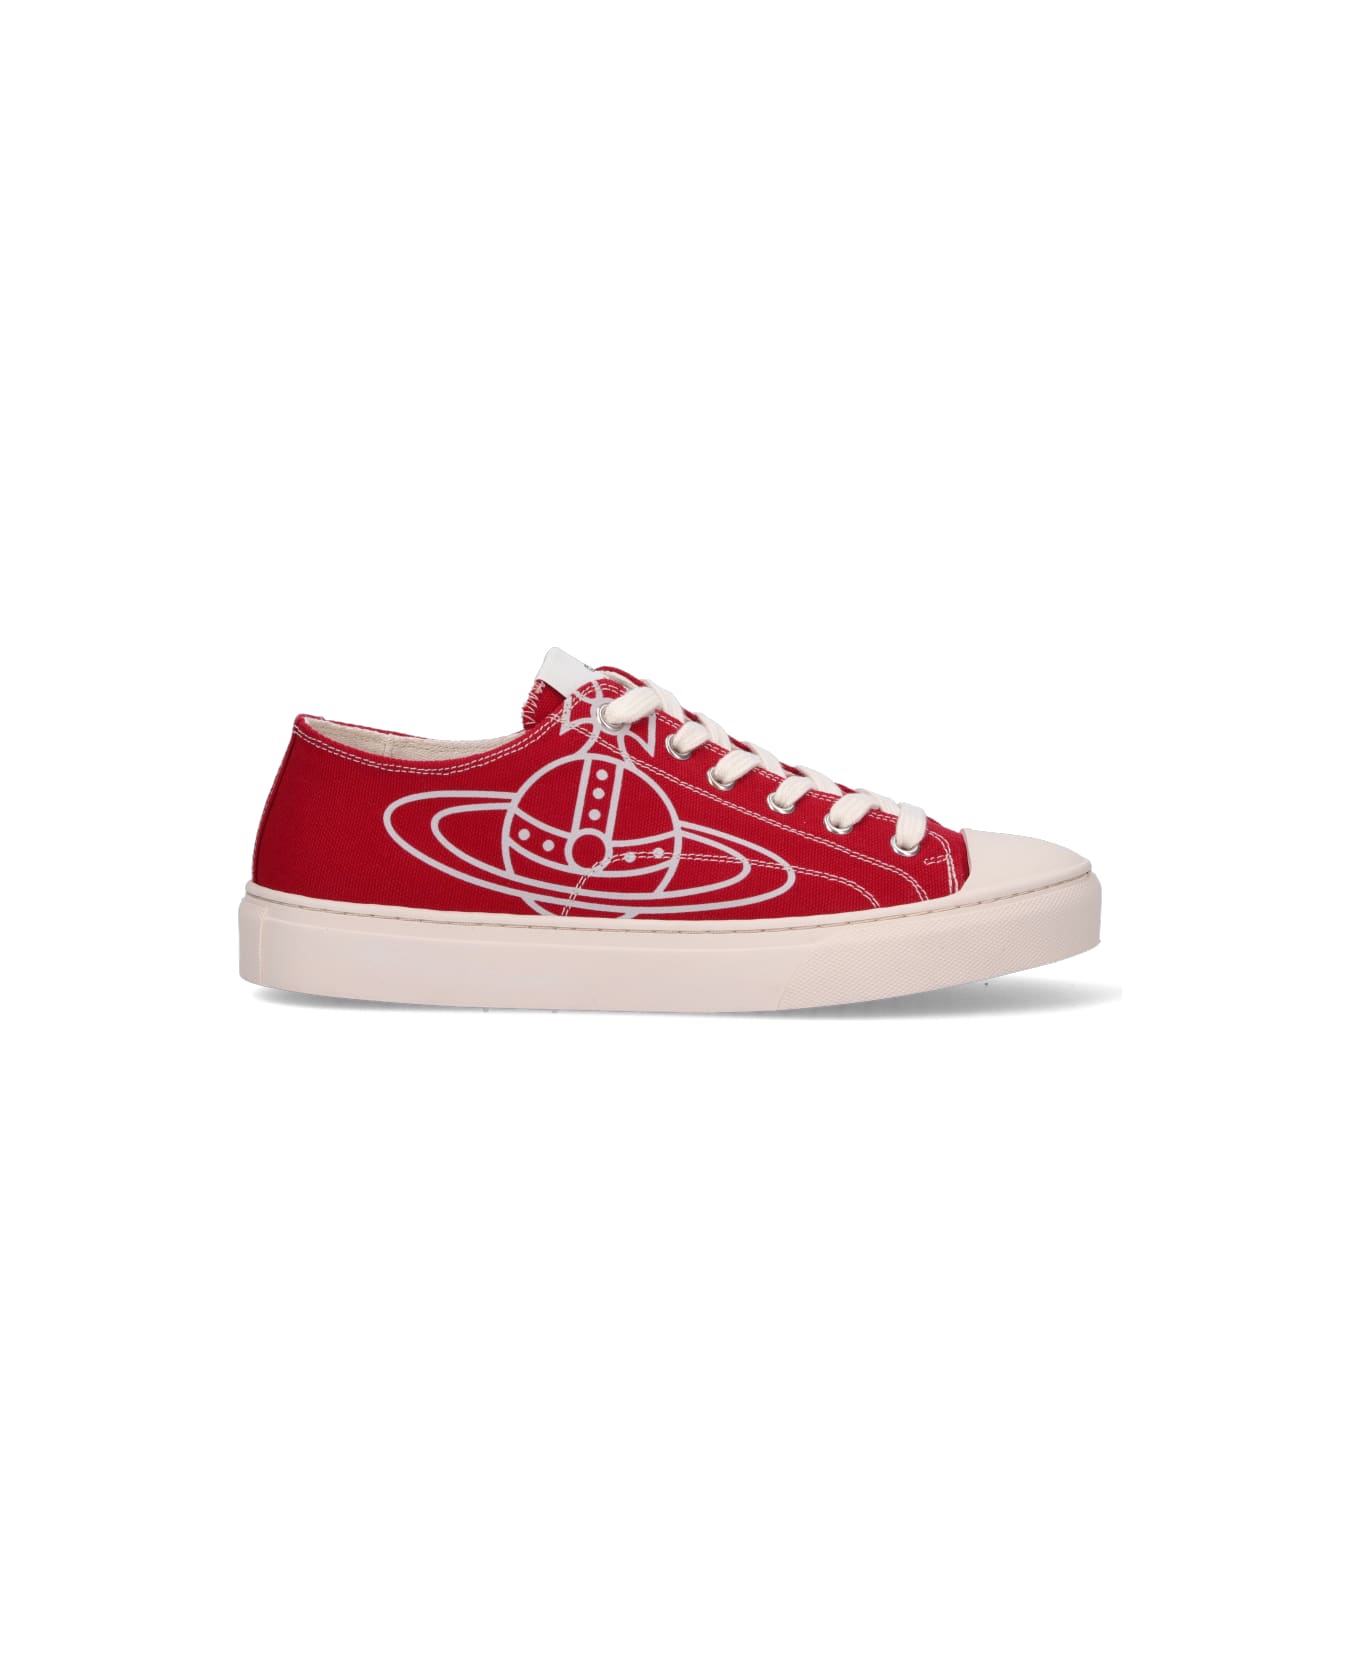 Vivienne Westwood "plimsoll Low Top 2.0" Sneakers - Red スニーカー